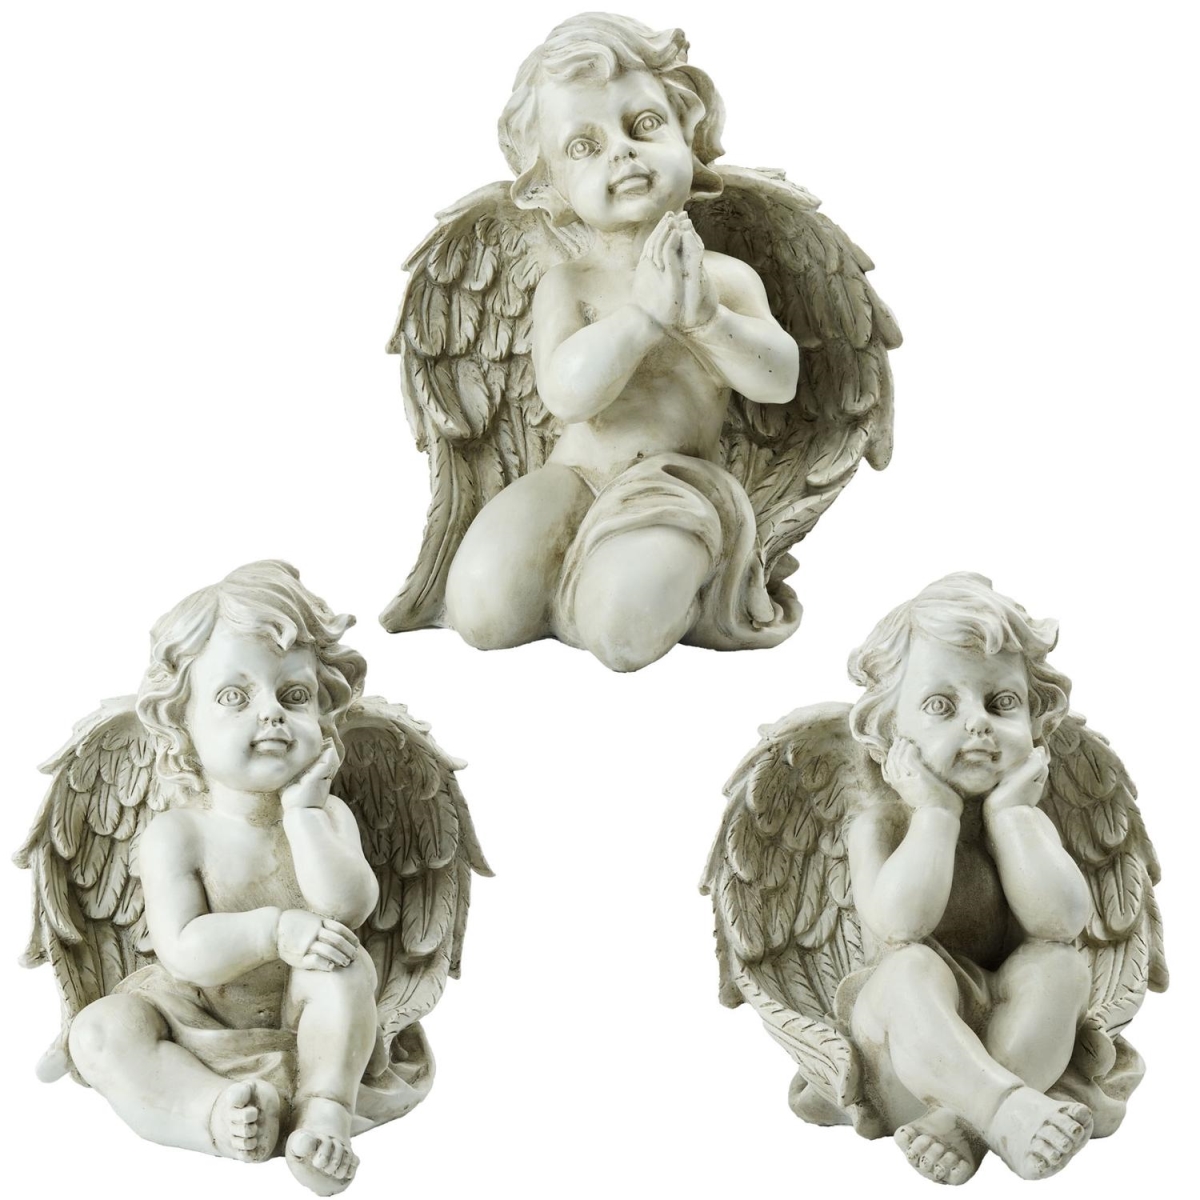 32589224 11 In. Sitting Cherub Angel Decorative Outdoor Garden Statues - Set Of 3